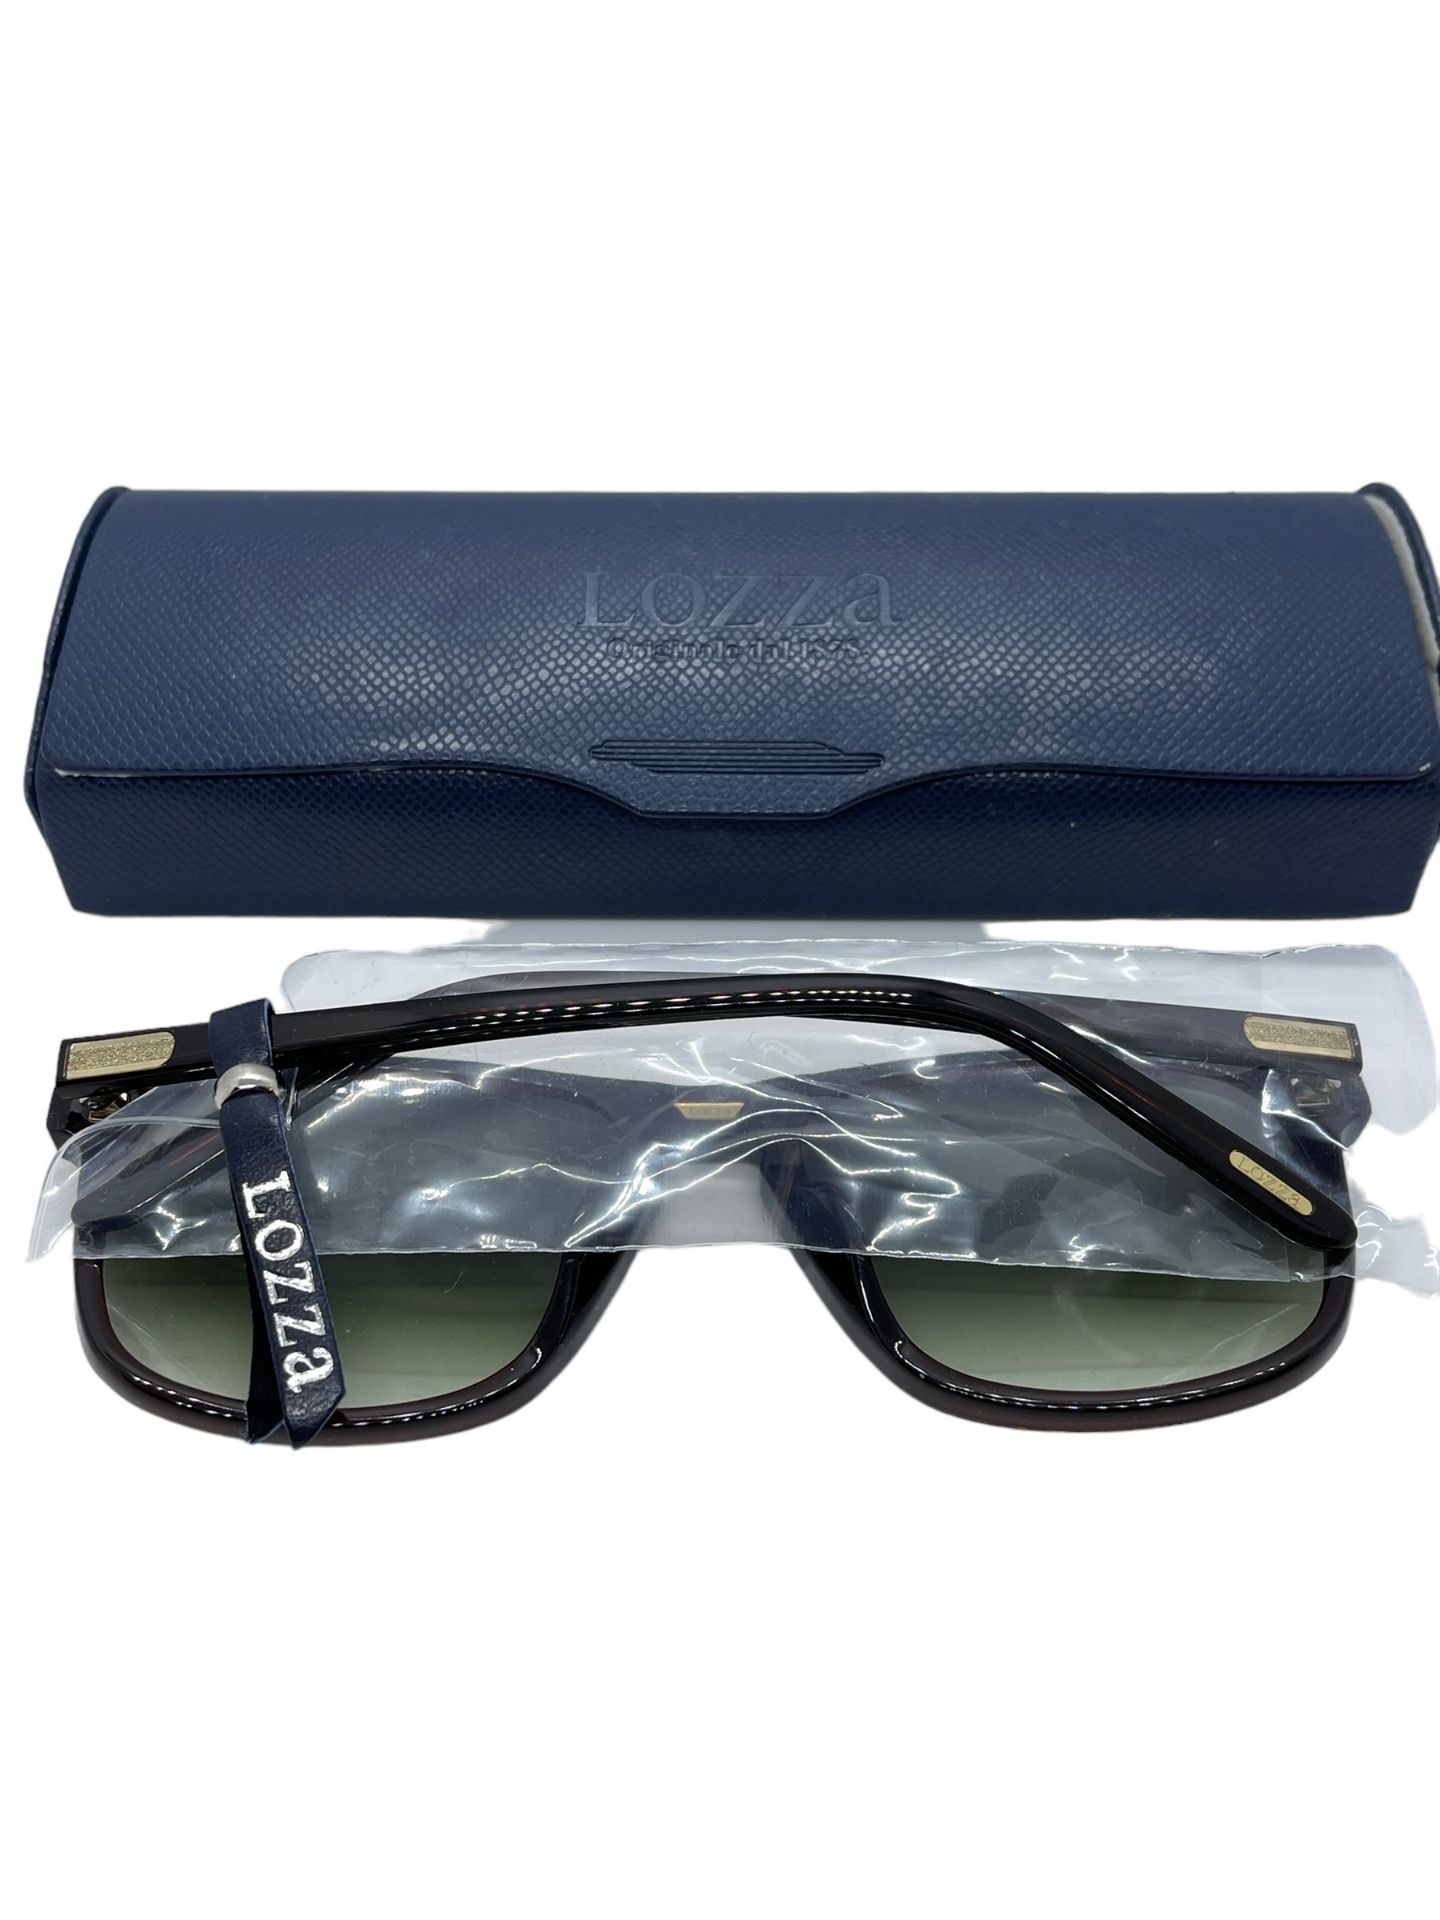 Lozza men's sunglasses boxed brand new - Image 2 of 4